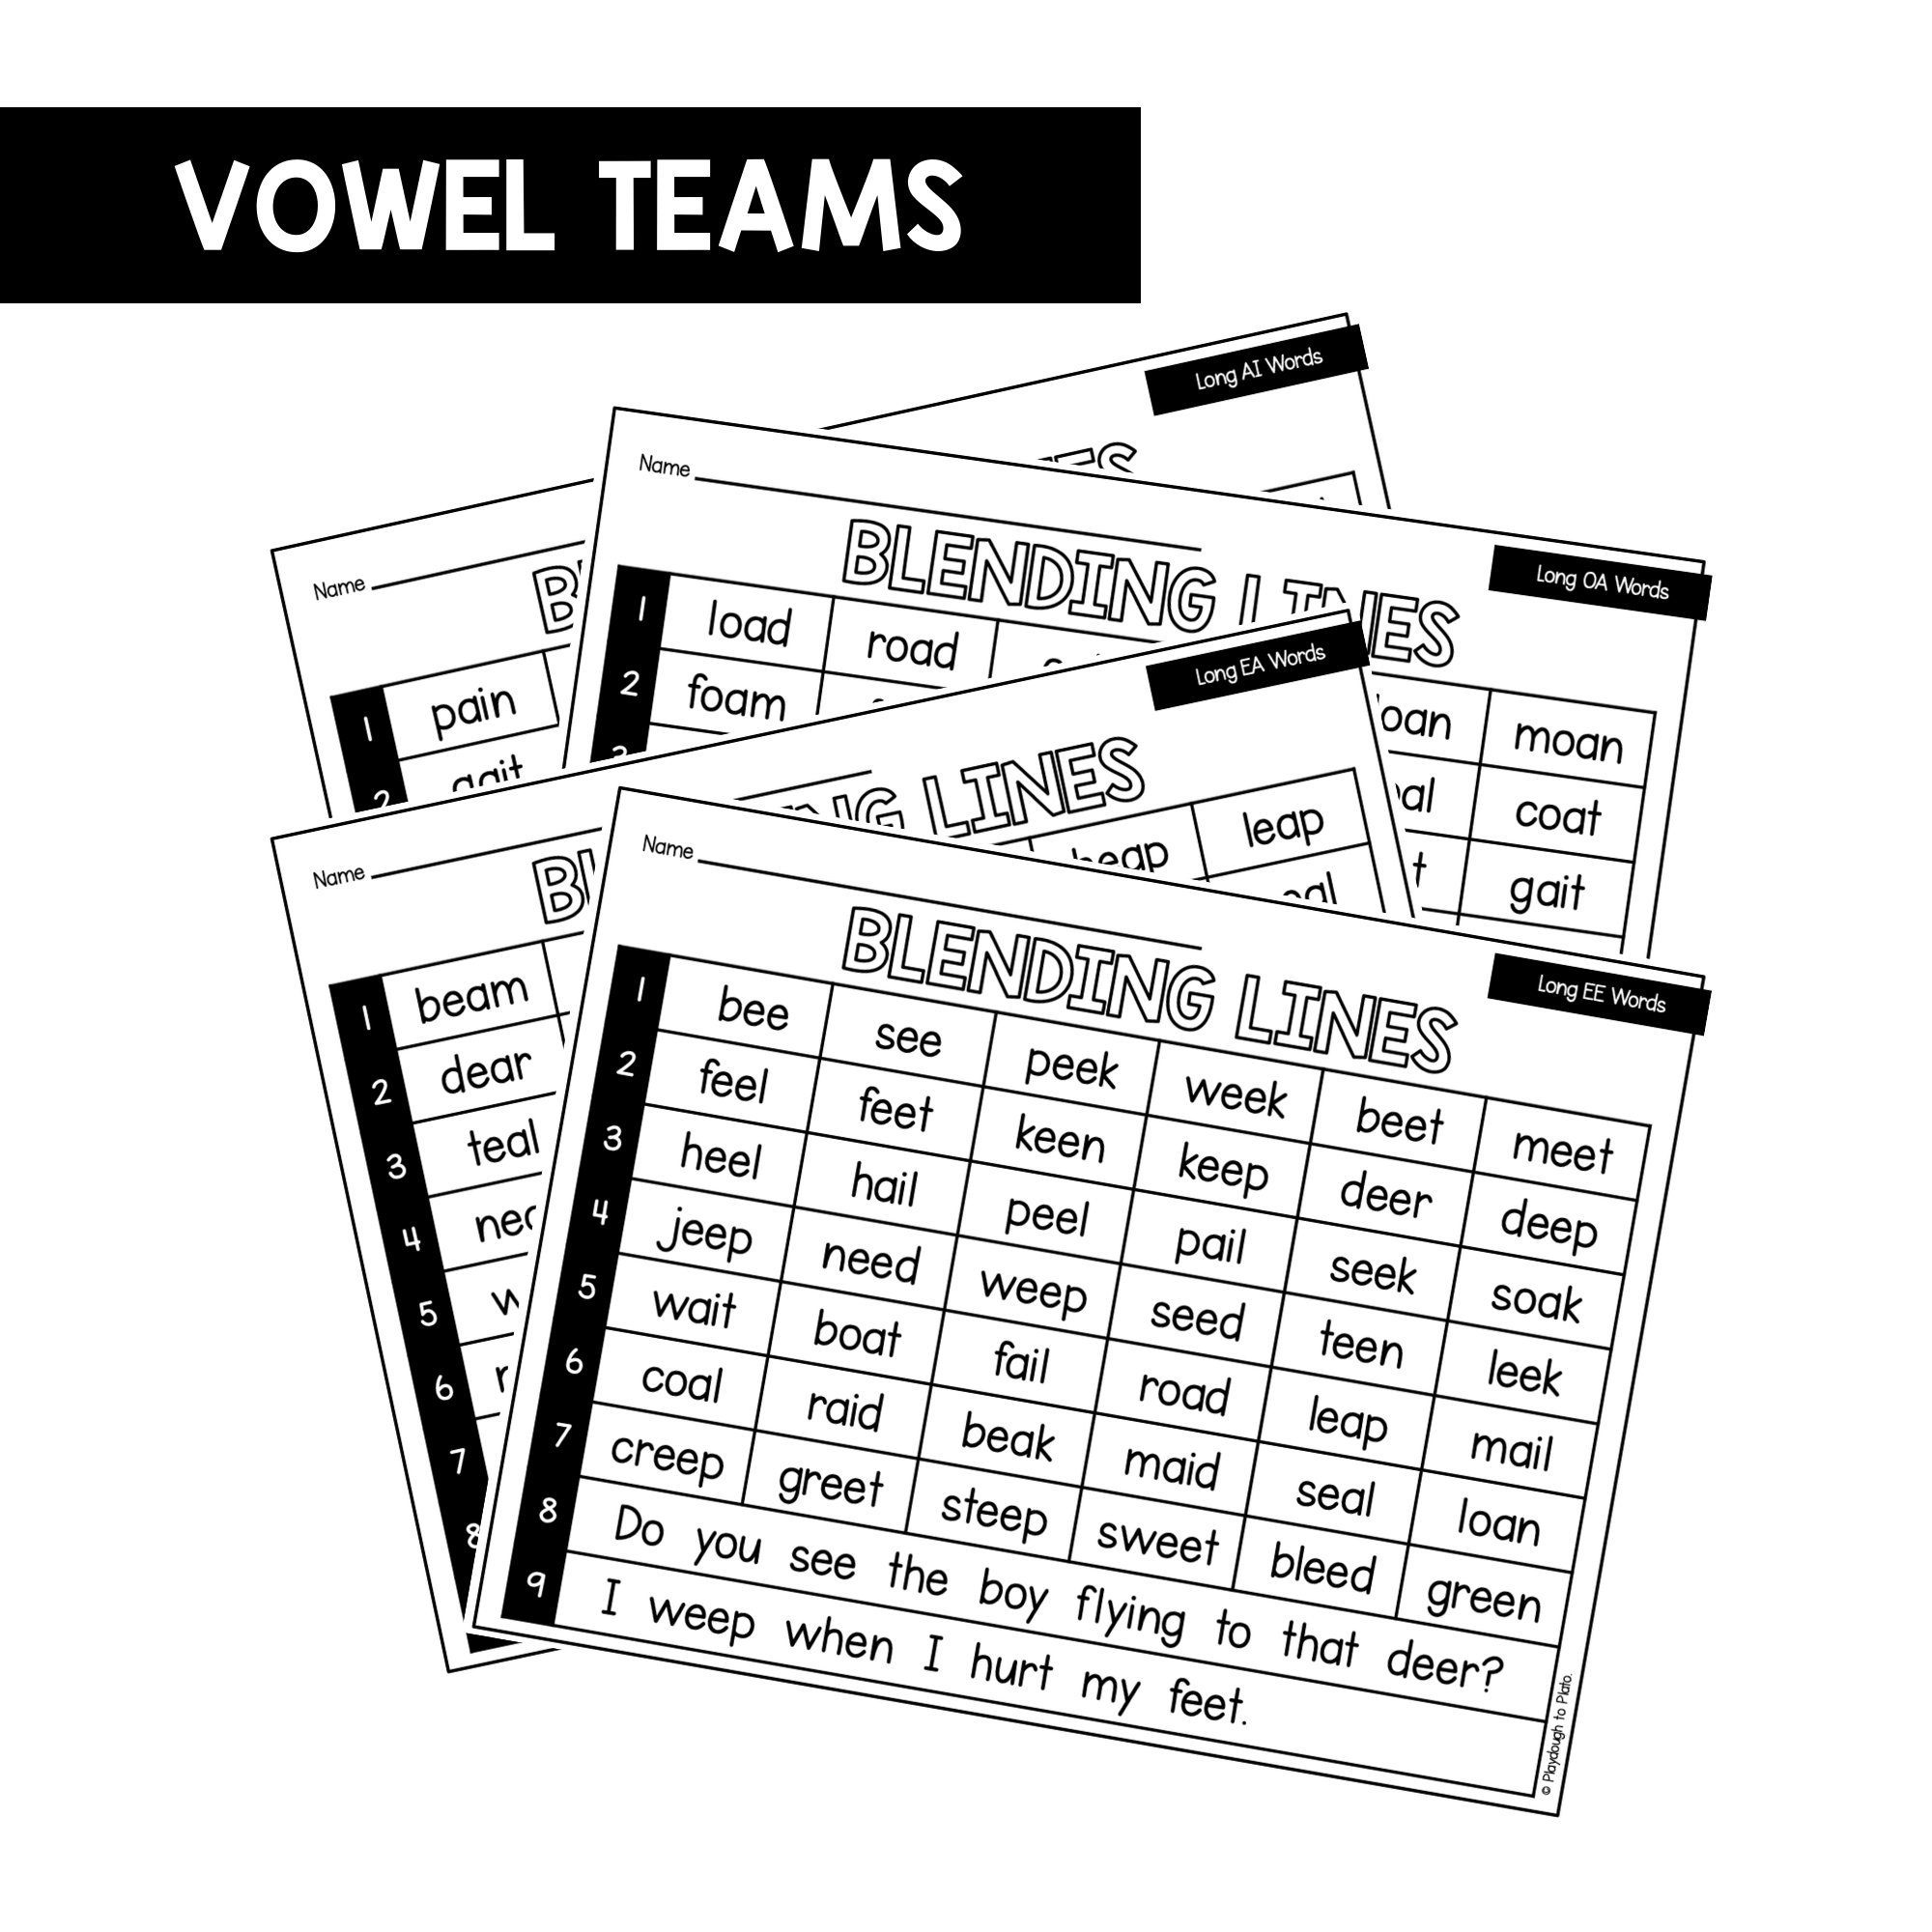 Vowel Team Blending Lines